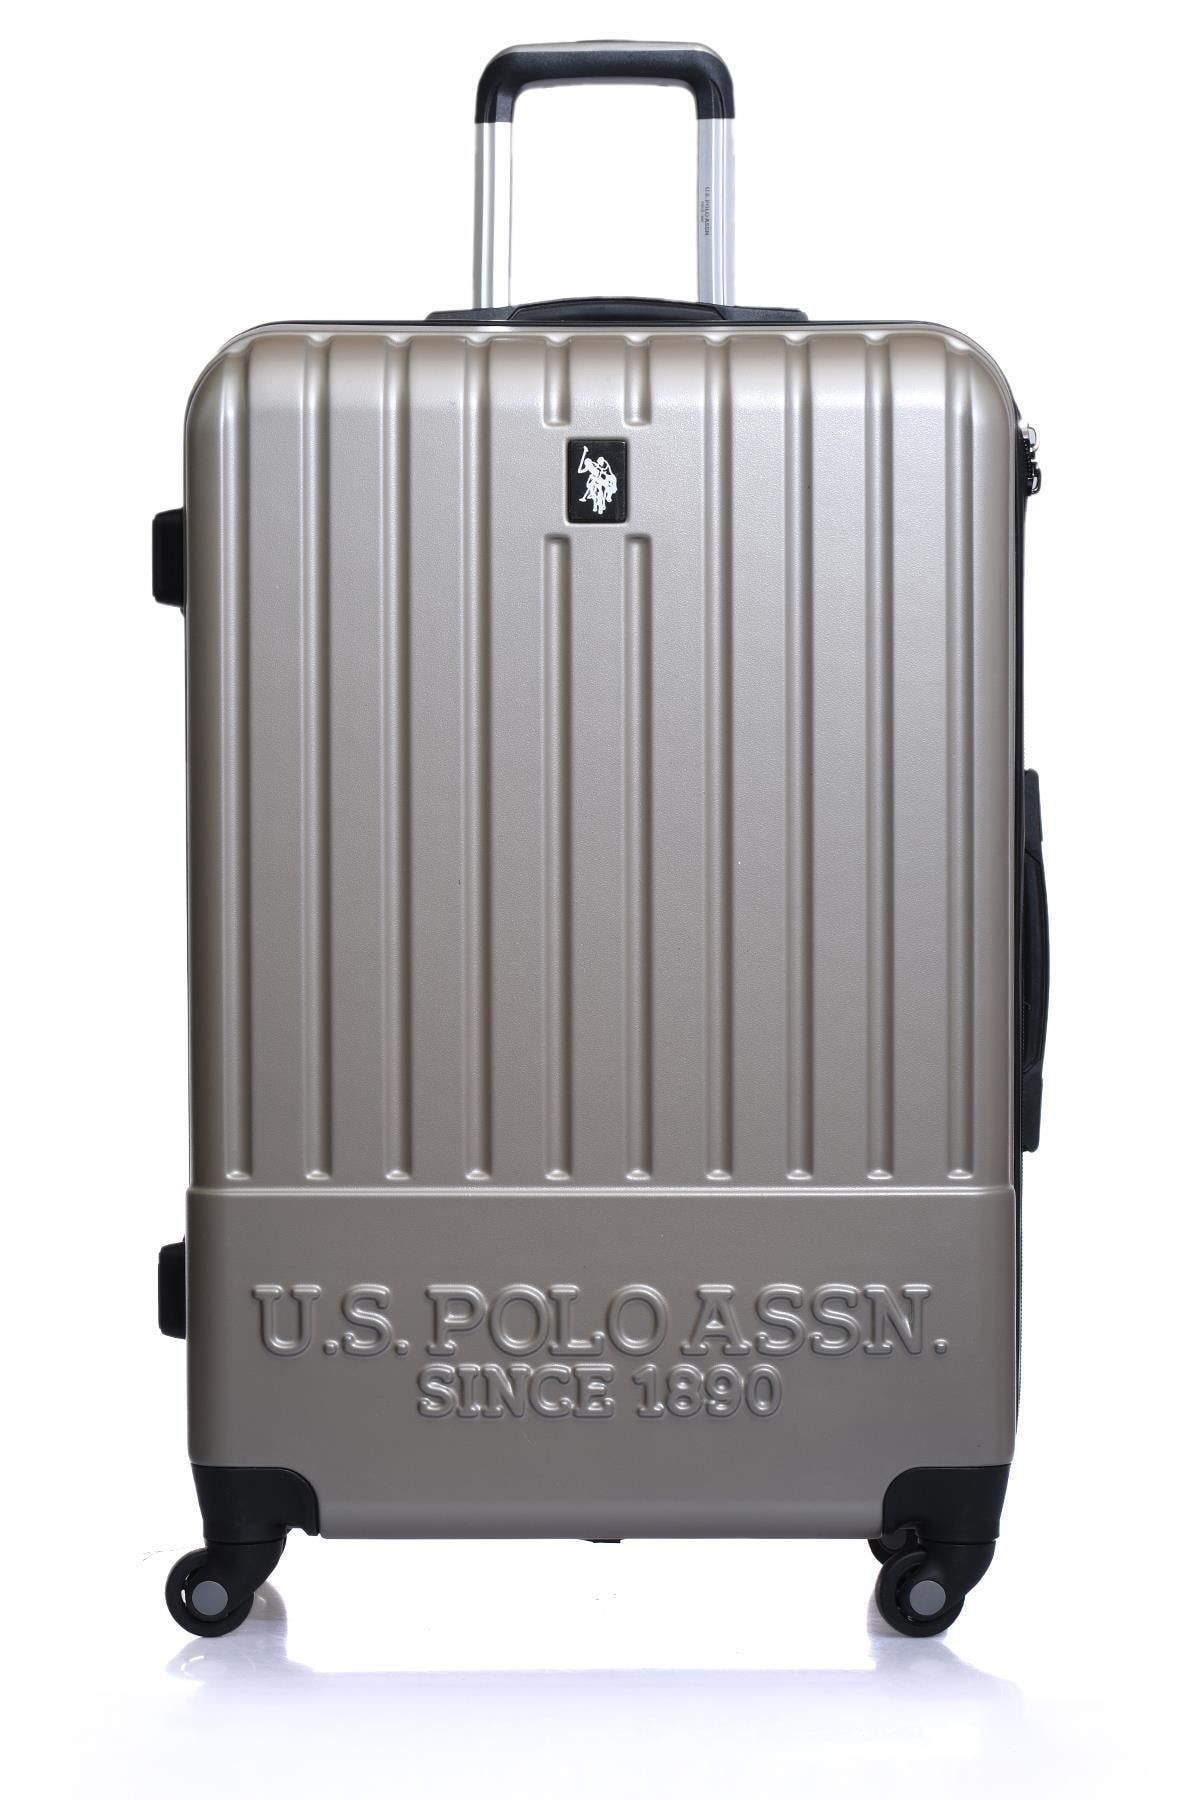 U.S. Polo Assn. چمدان سایز بزرگ شامپاین یونیسکس Plvlz22840a PLVLZ22838-40-41-42-43-L